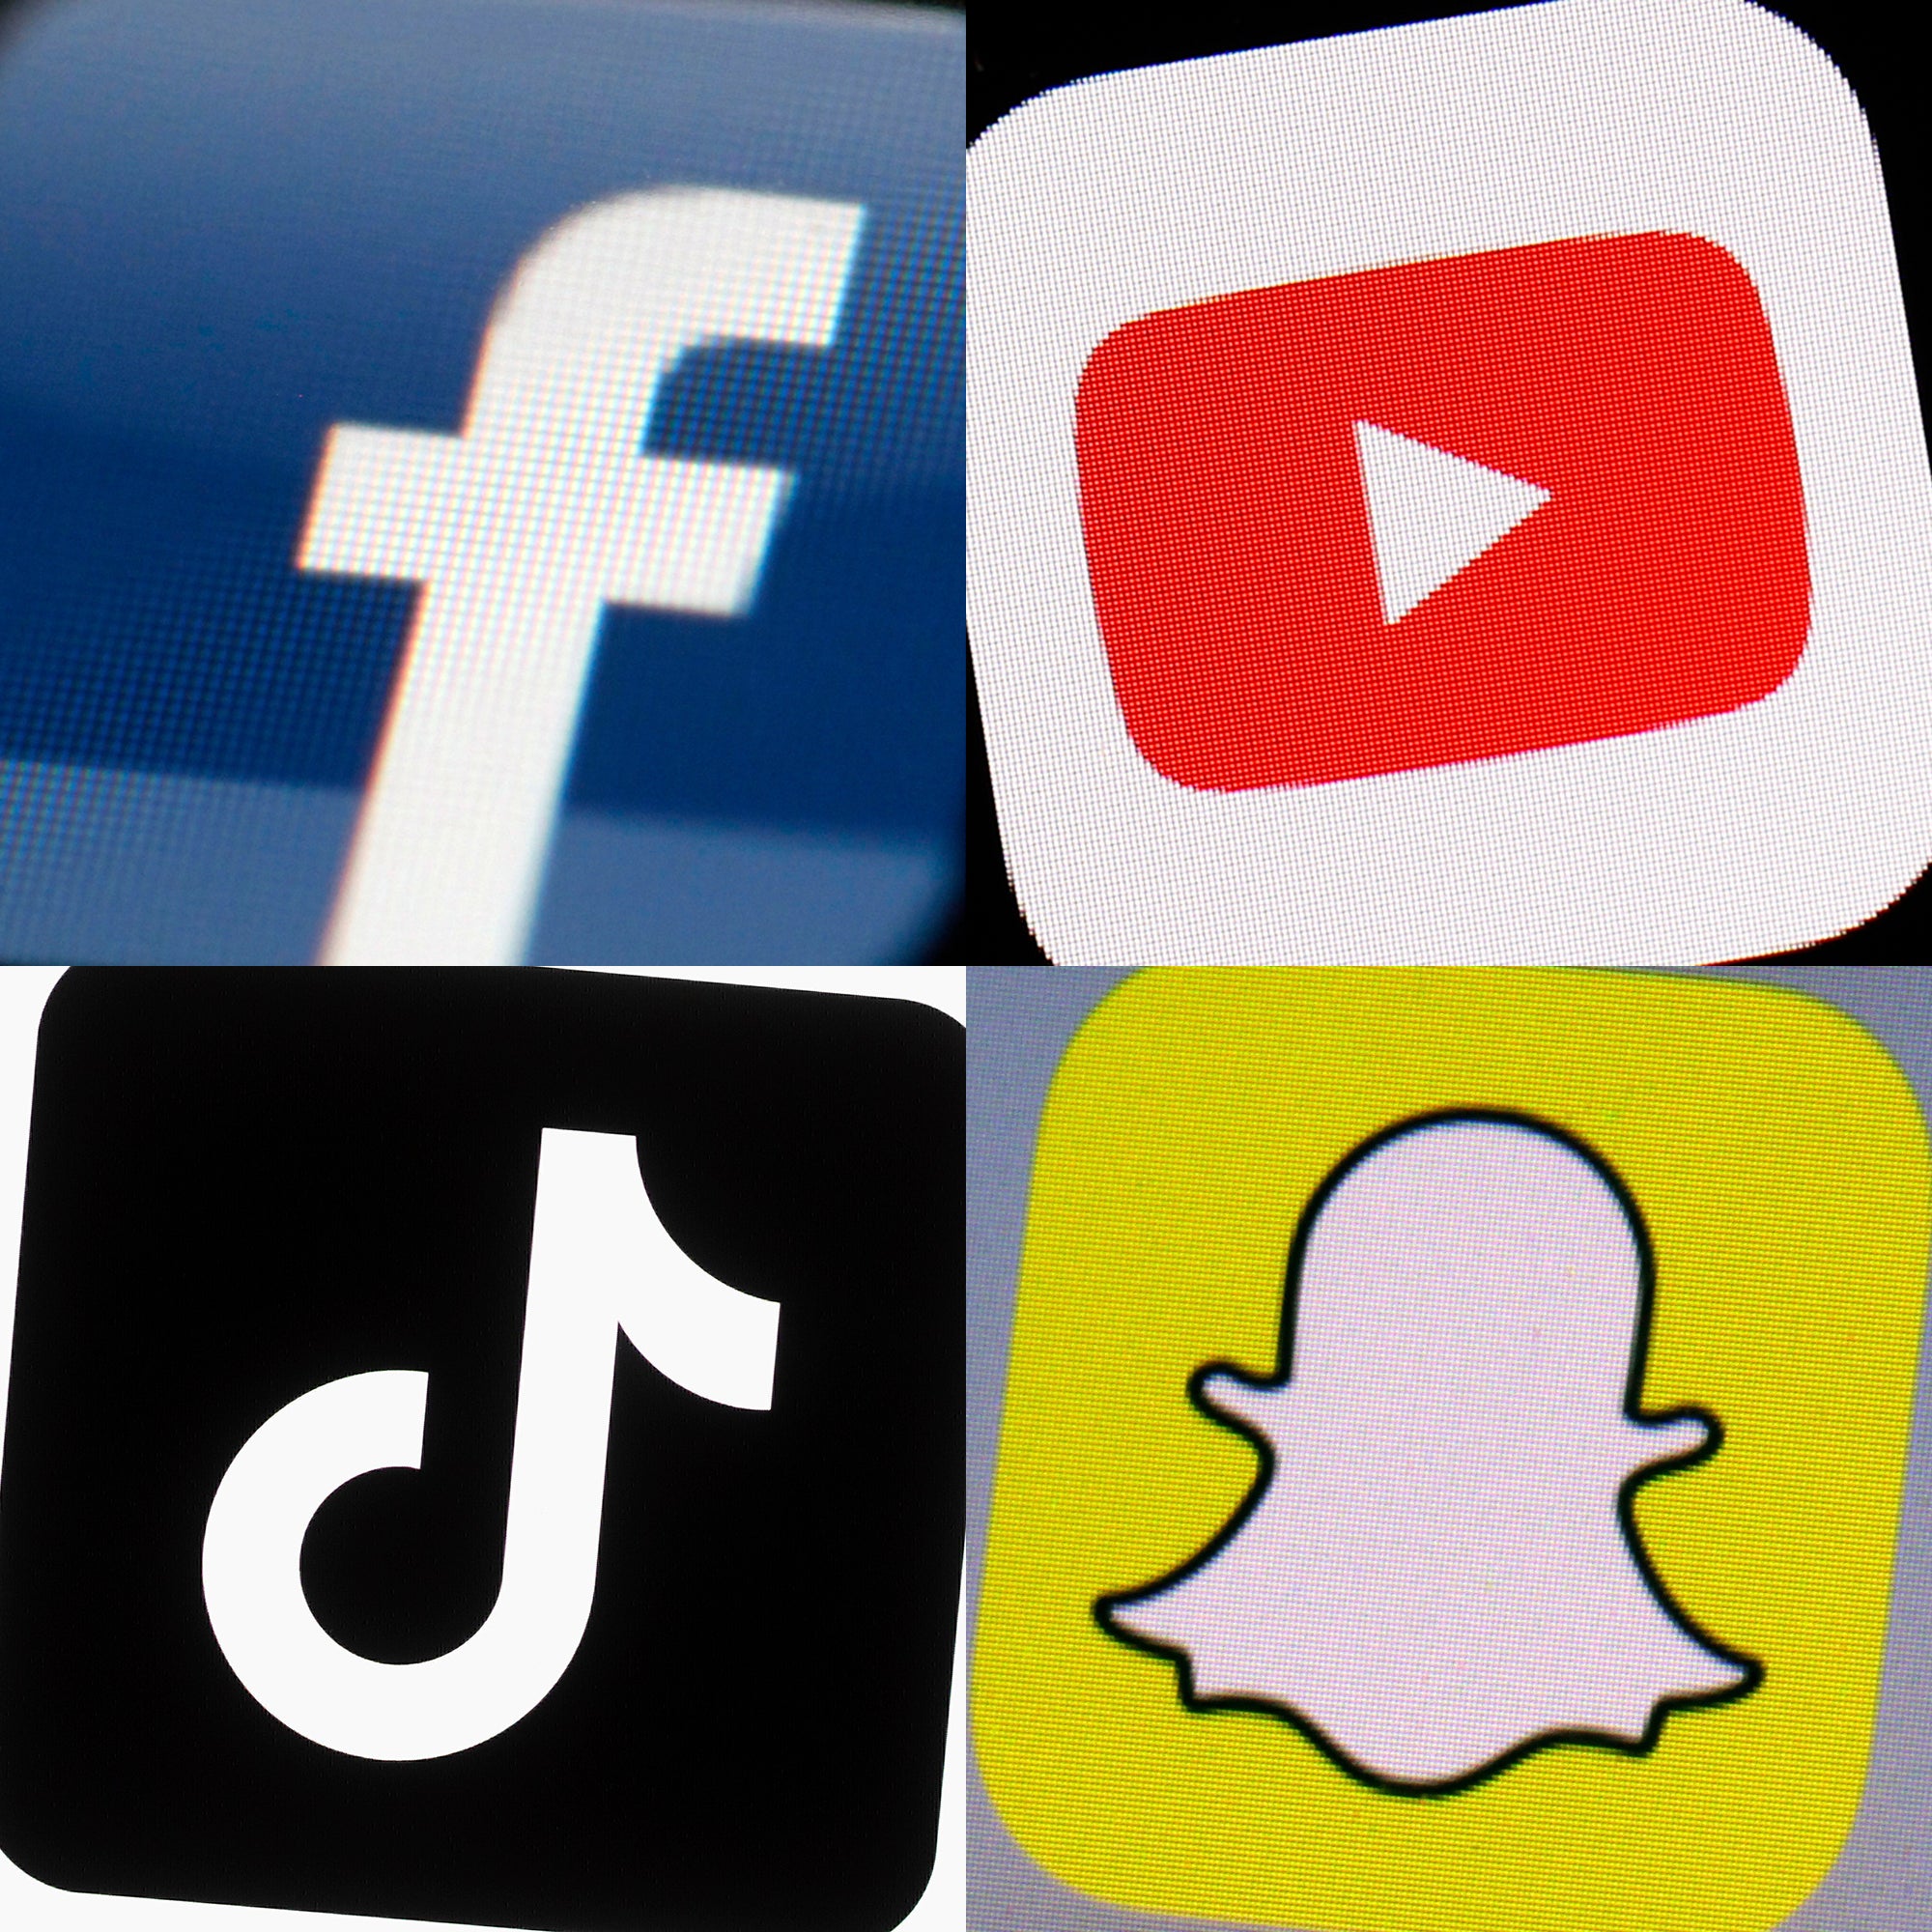 Si se enmienda la Sección 230, las empresas de redes sociales podrían ser responsables del contenido publicado en sus plataformas